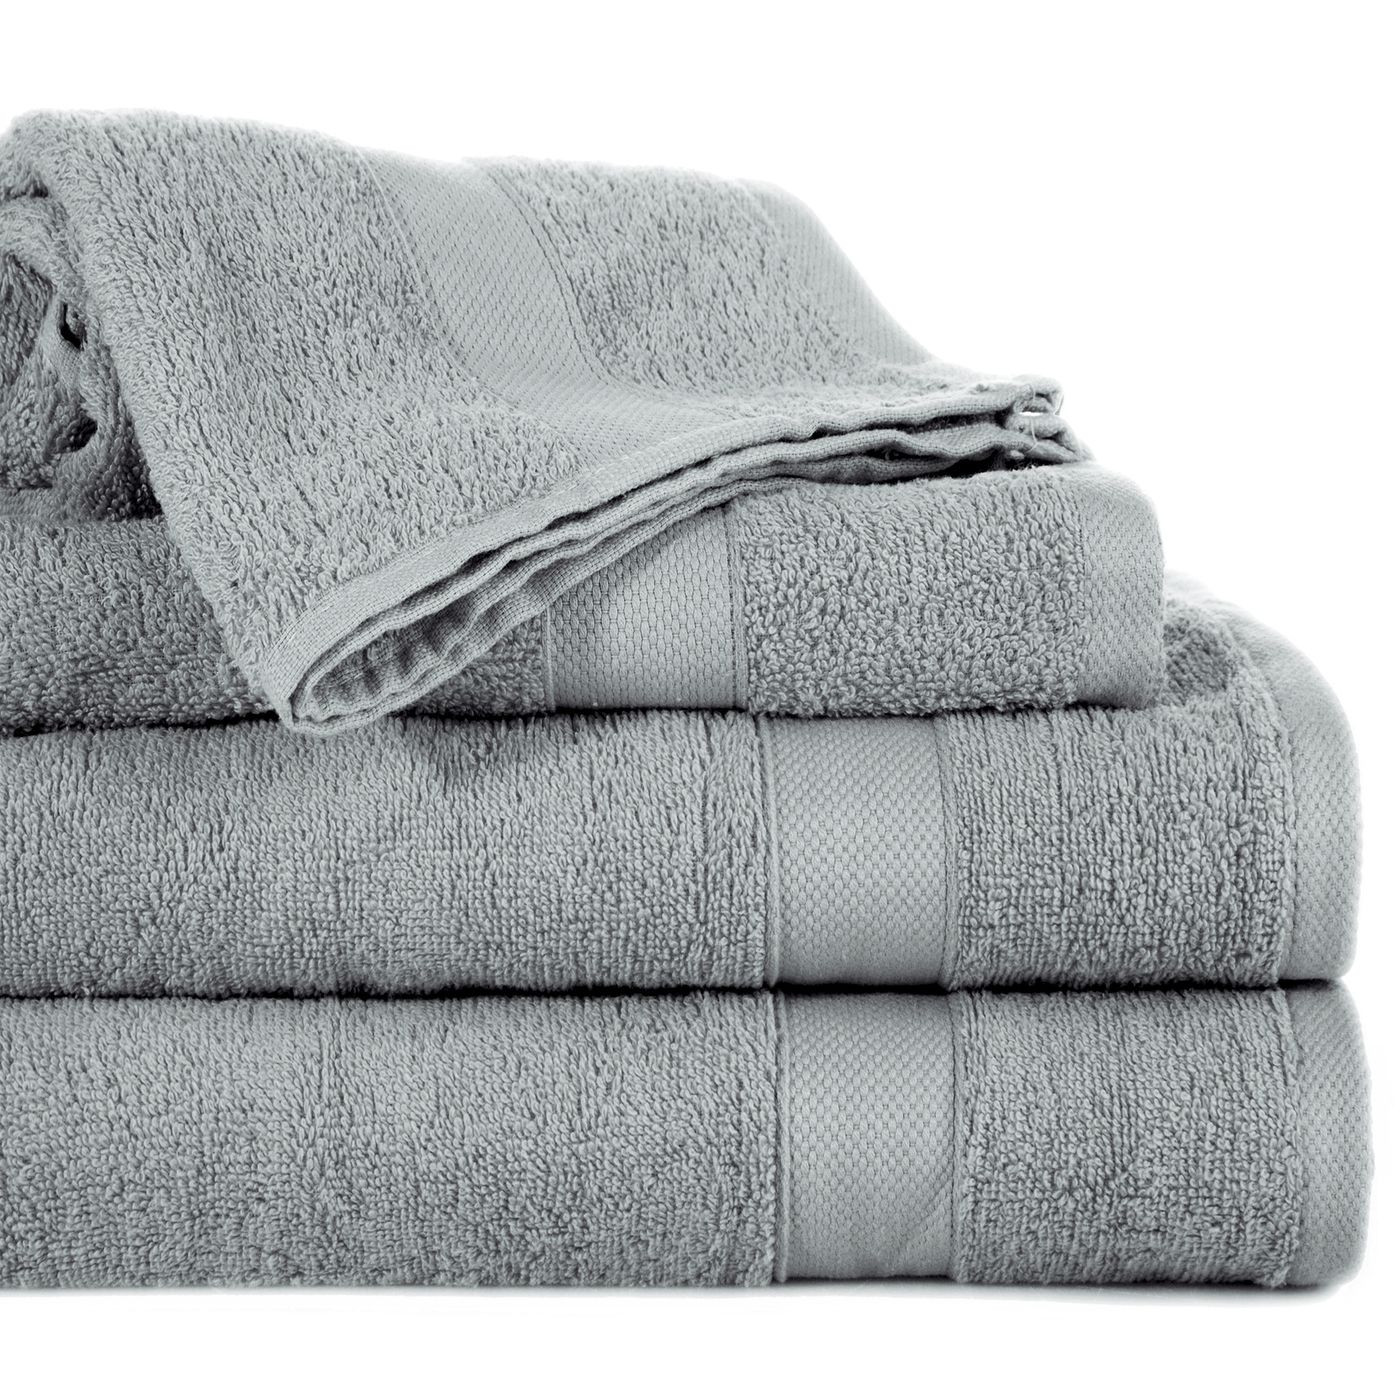 Miękki chłonny ręcznik kąpielowy stalowy 70x140